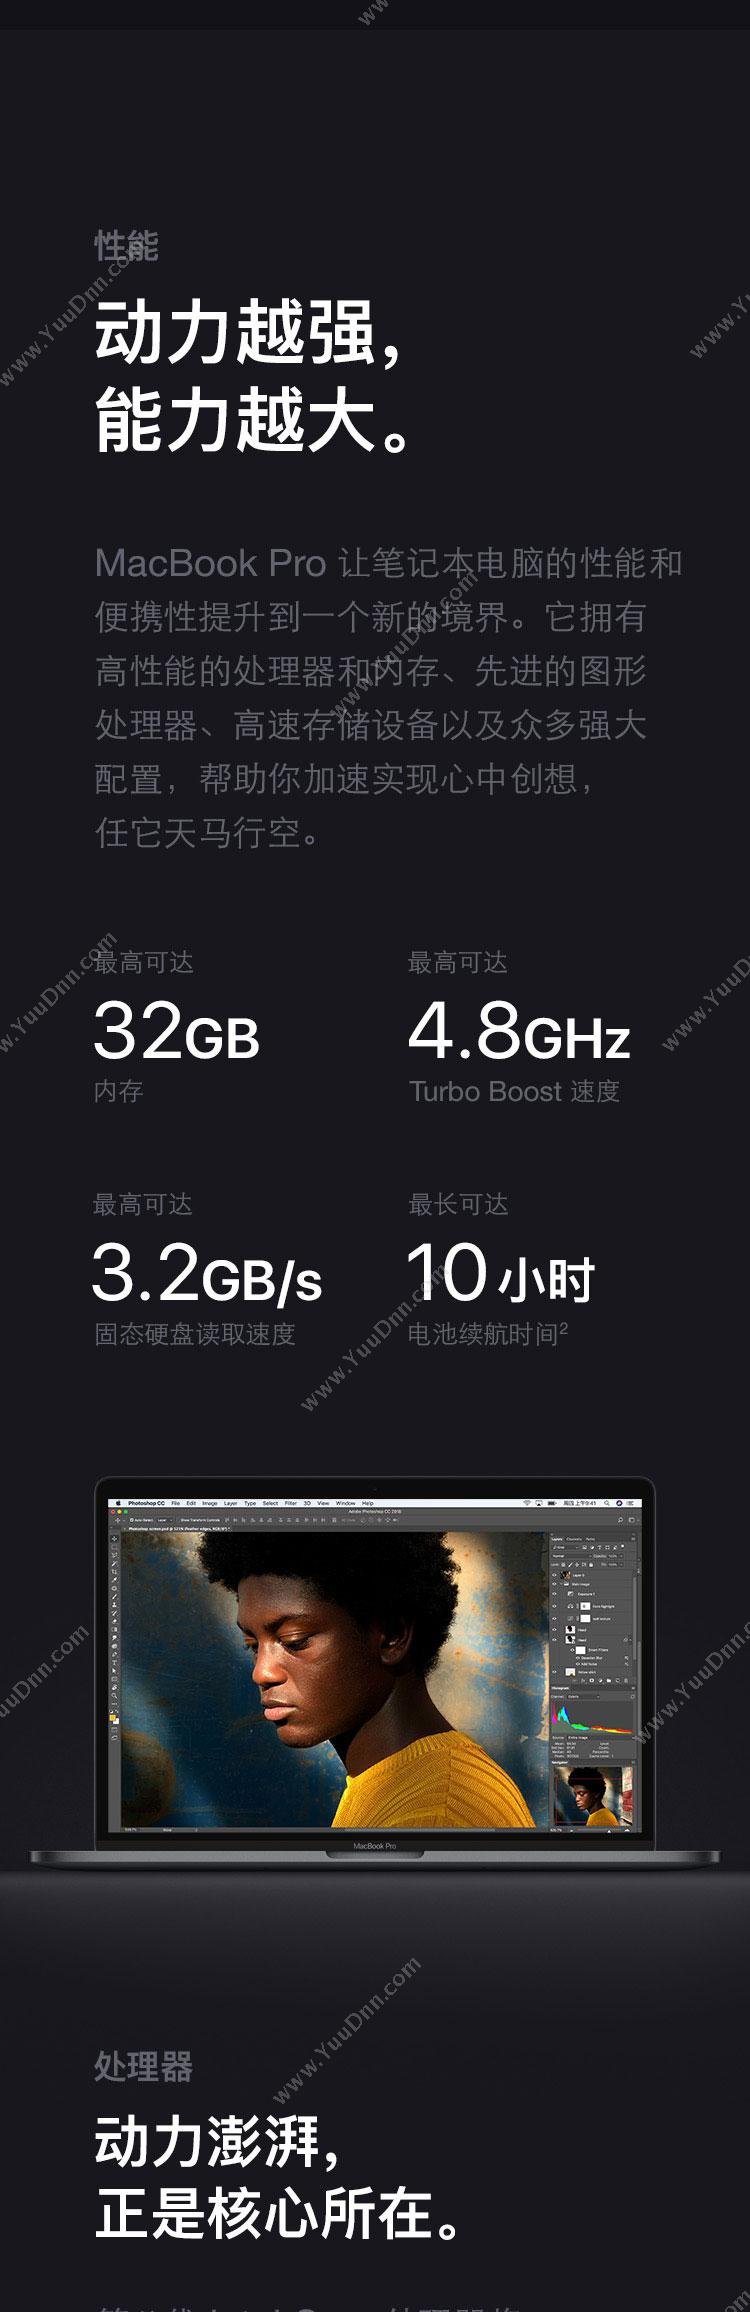 苹果 Apple MR932CH/A MacBook Pro 15英寸 i7/16GB/RP555X/256GB-CHN (深空灰） 笔记本